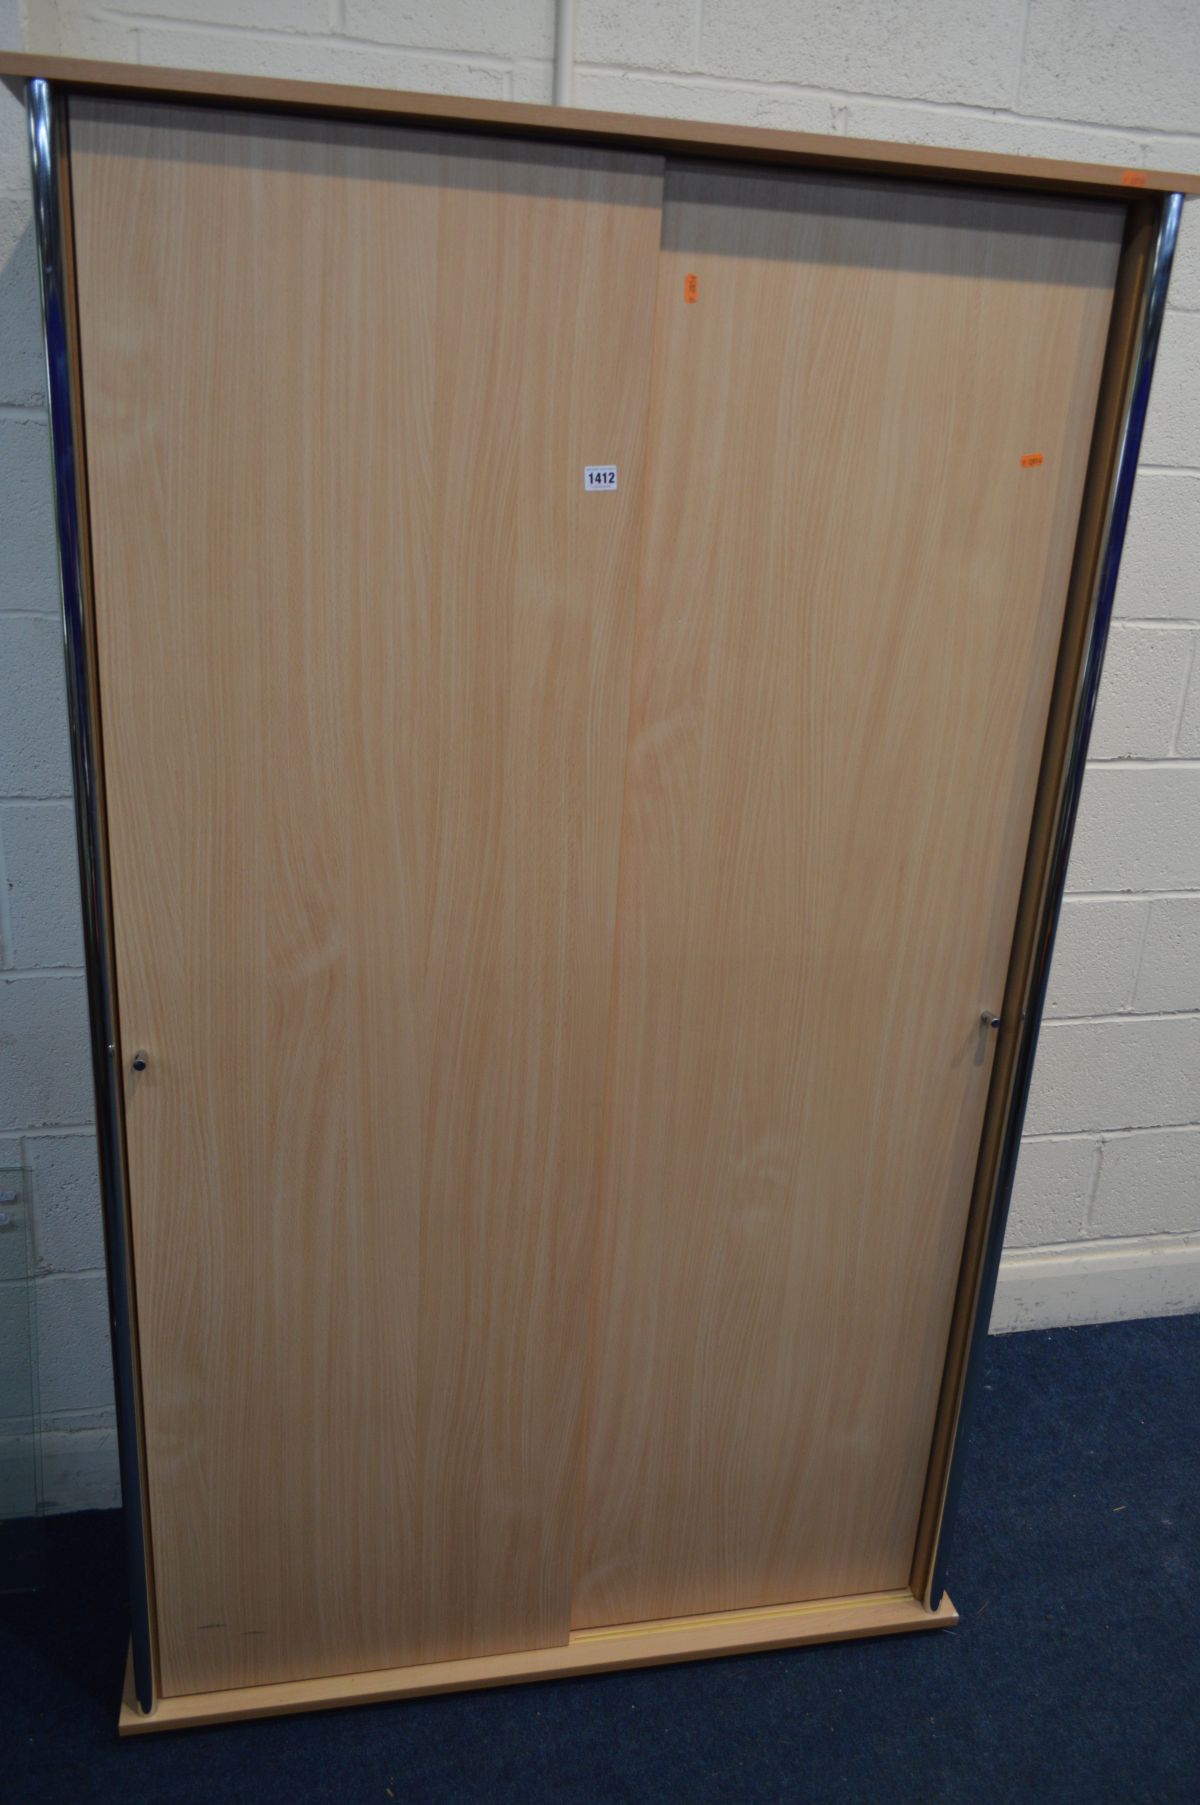 A MODERN BEECH EFFECT DOUBLE SLIDING DOOR WARDROBE, width 106cm x depth 52cm x height 180cm (Sd)